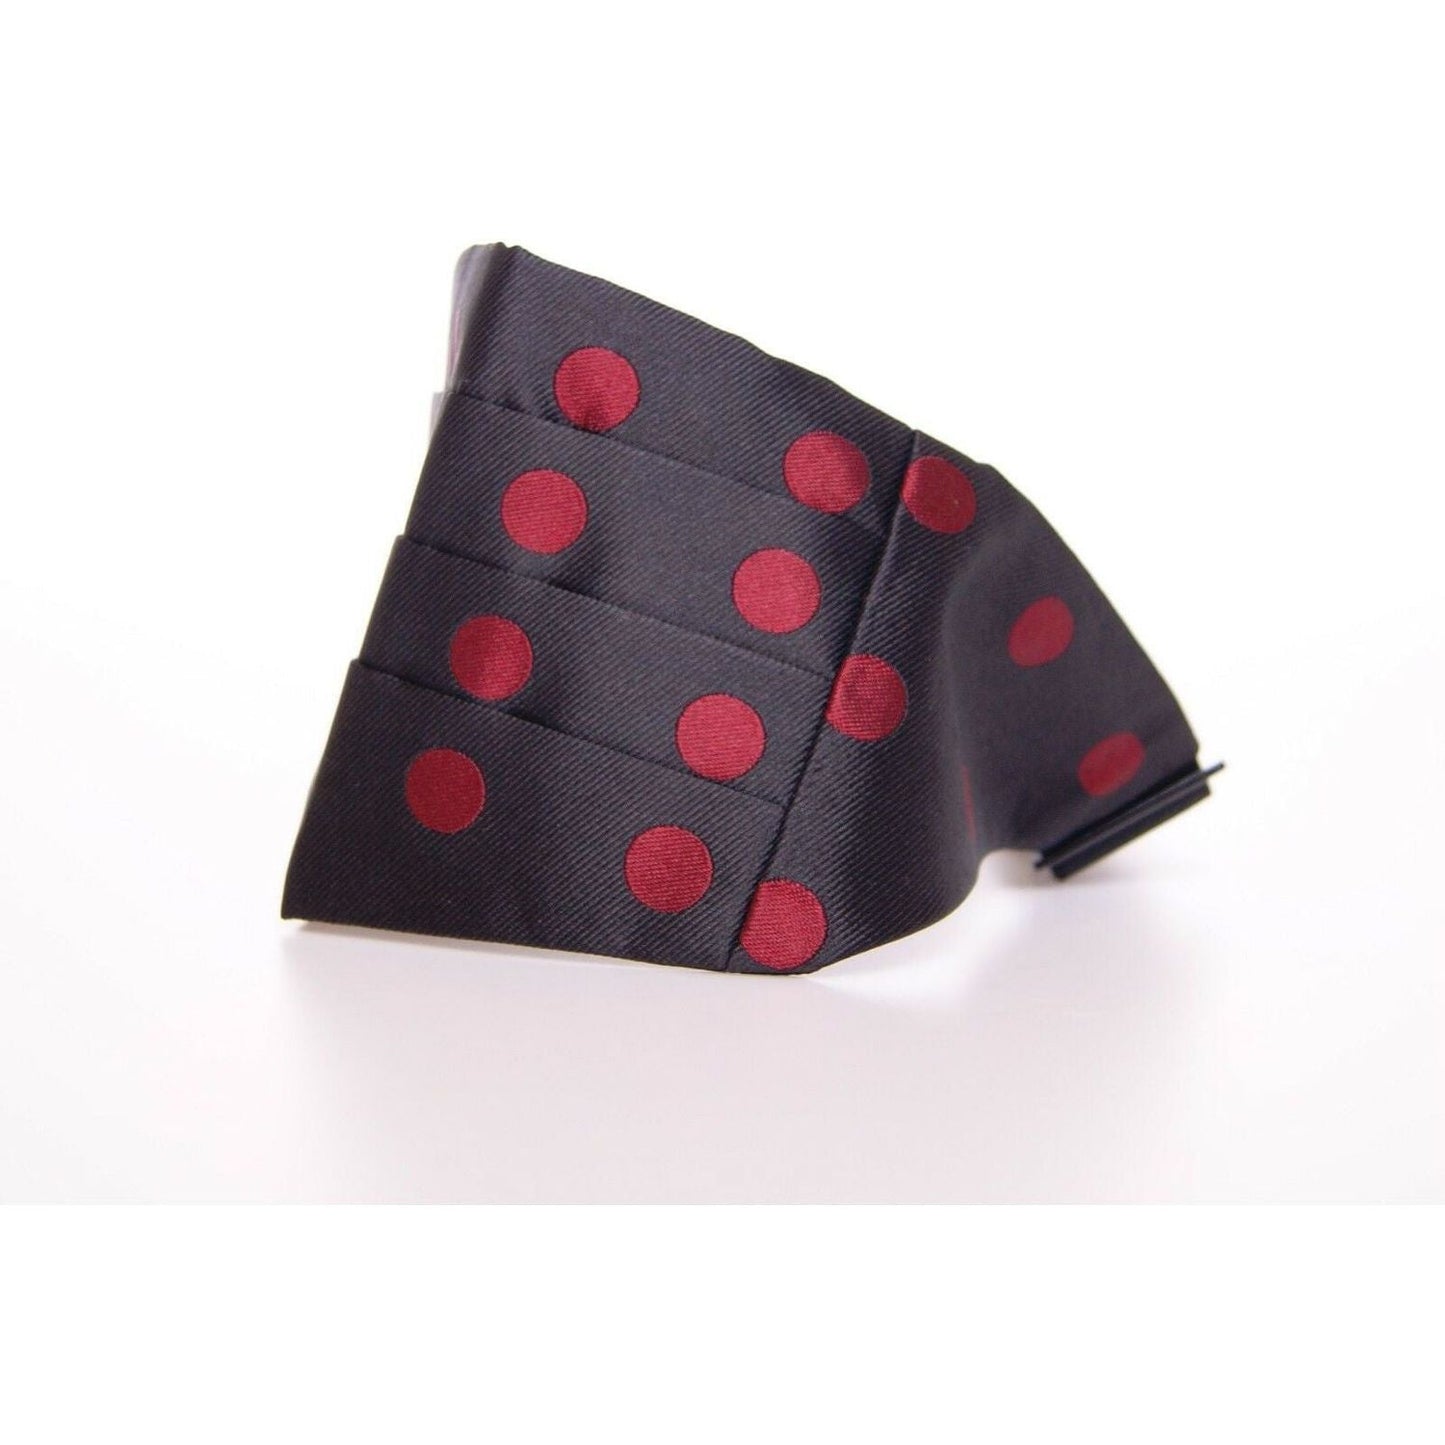 Dolce & Gabbana Exquisite Black Silk Cummerbund with Red Polka Dots black-waist-smoking-tuxedo-cummerbund-belt-1